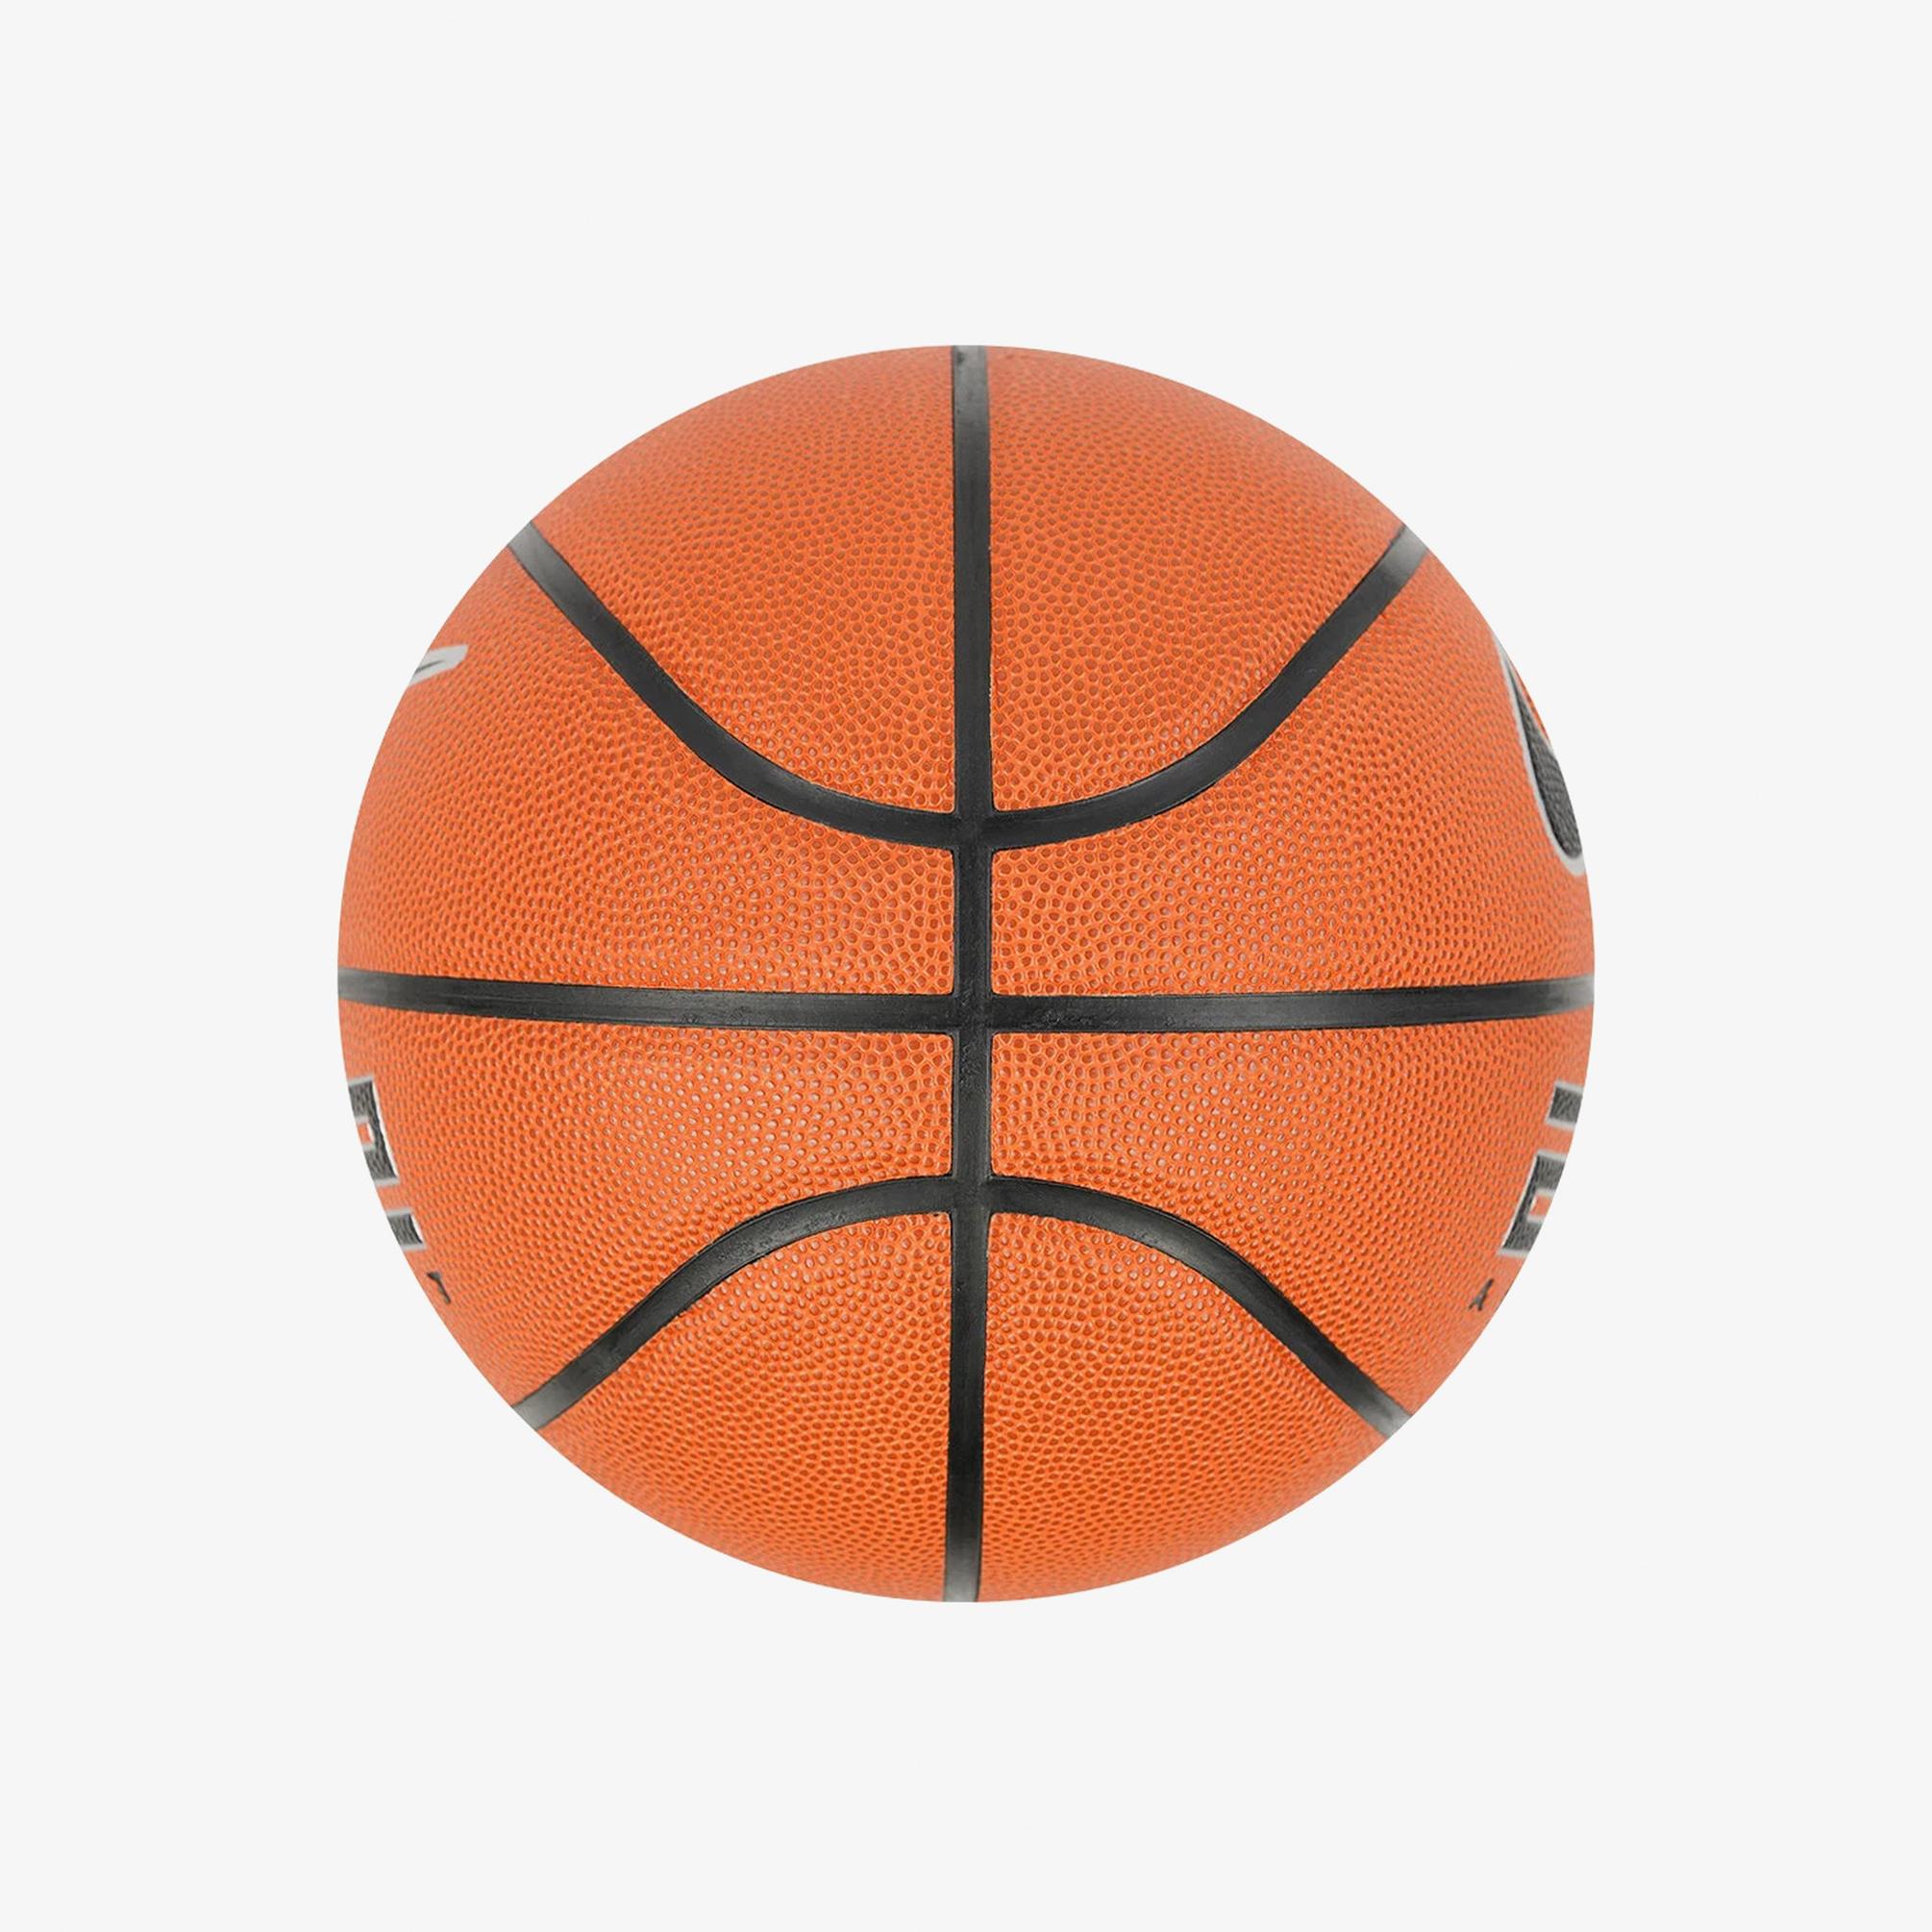  Nike Elite All Court 8P 2.0 Deflated Ball Turuncu Basketbol Topu